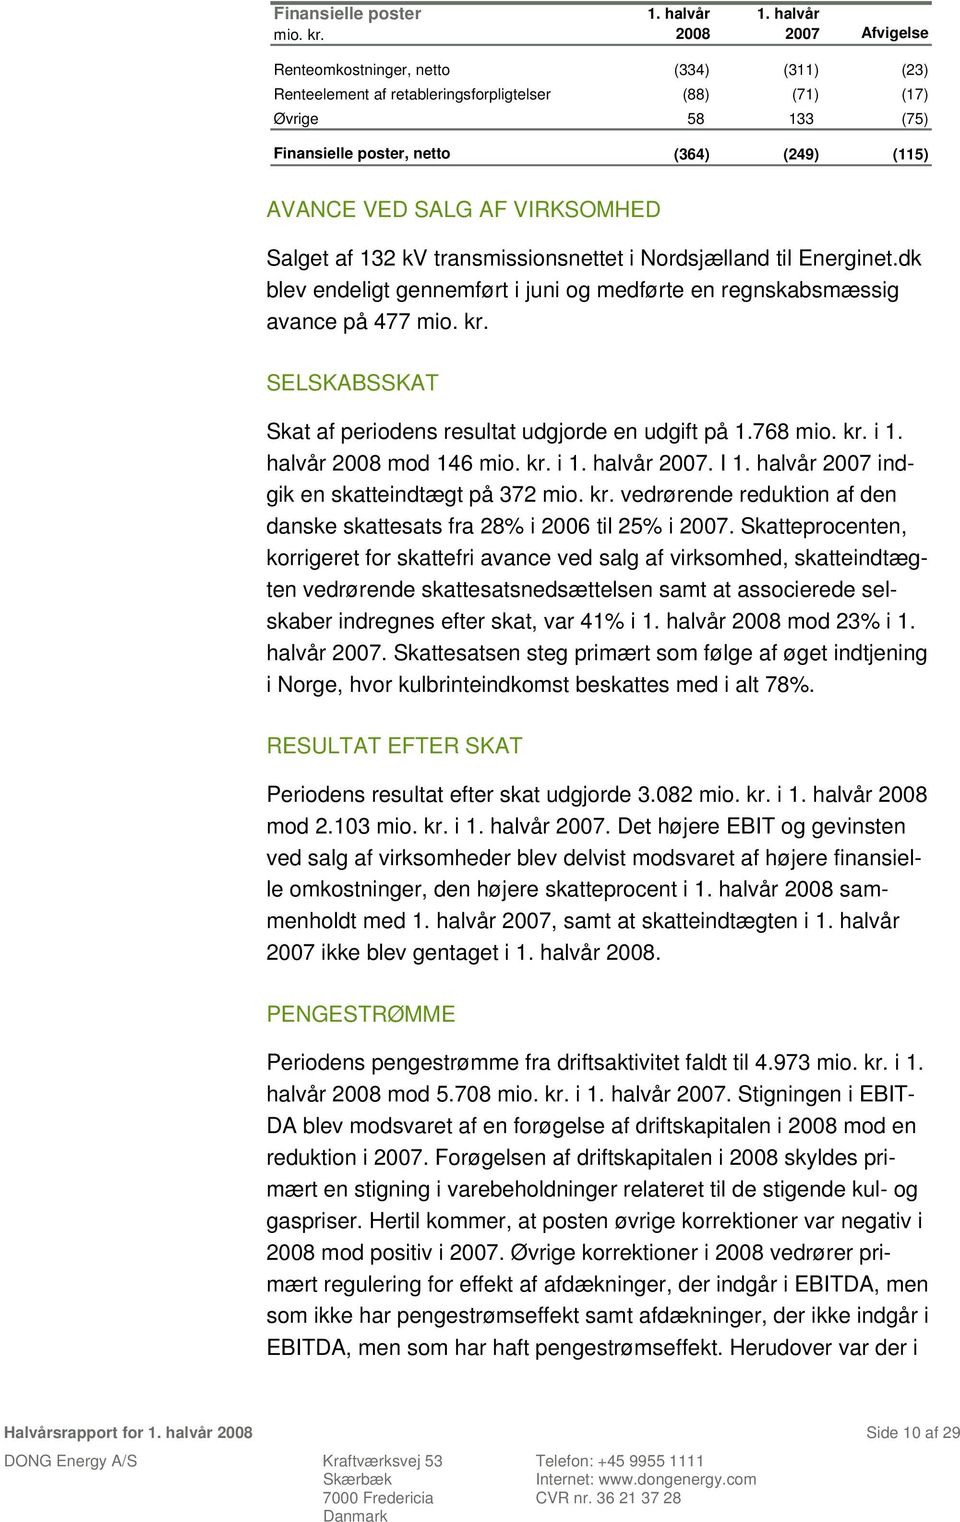 VIRKSOMHED Salget af 132 kv transmissionsnettet i Nordsjælland til Energinet.dk blev endeligt gennemført i juni og medførte en regnskabsmæssig avance på 477 mio. kr.